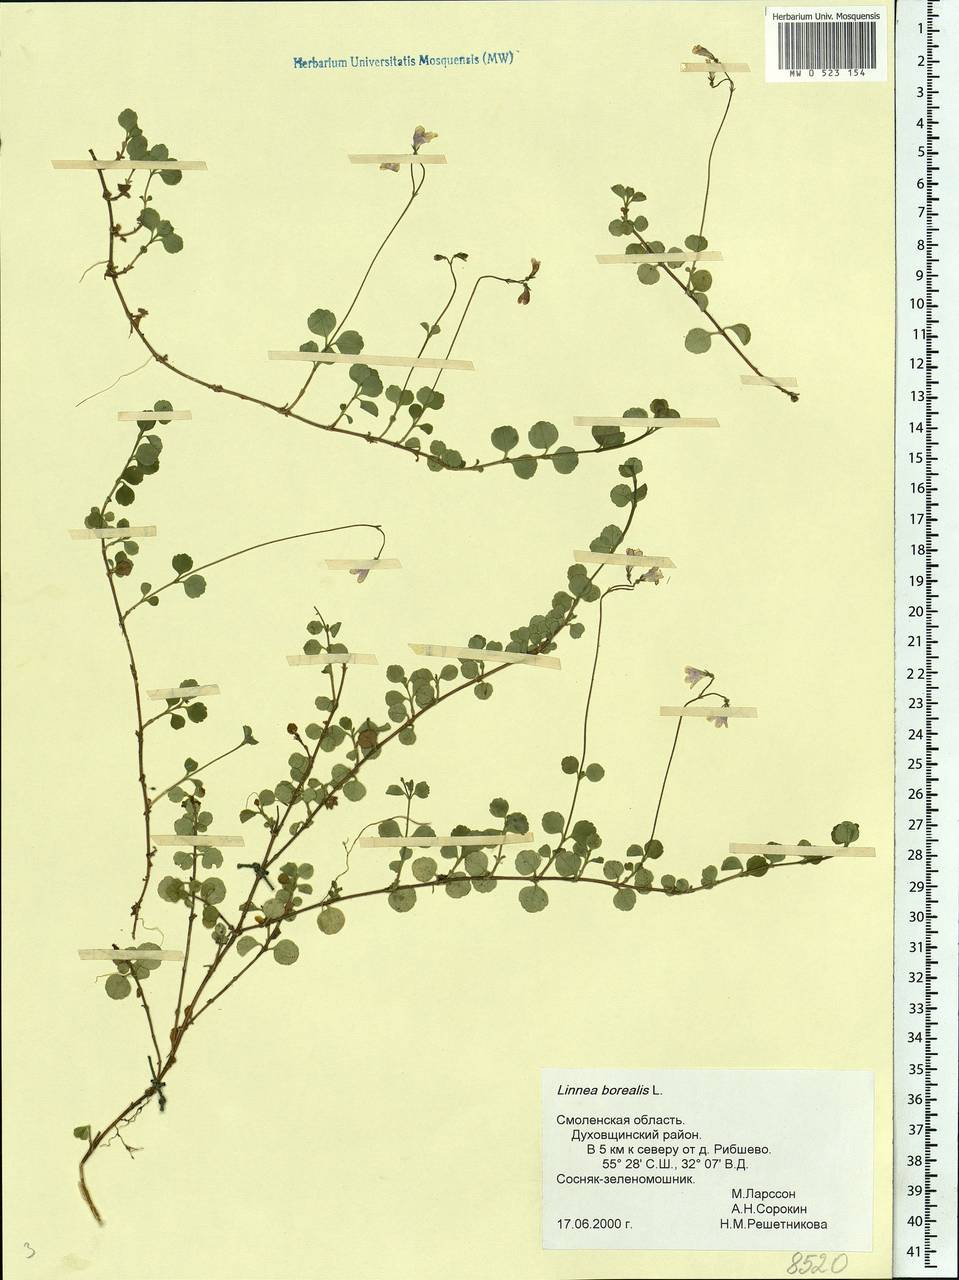 Linnaea borealis L., Eastern Europe, Western region (E3) (Russia)